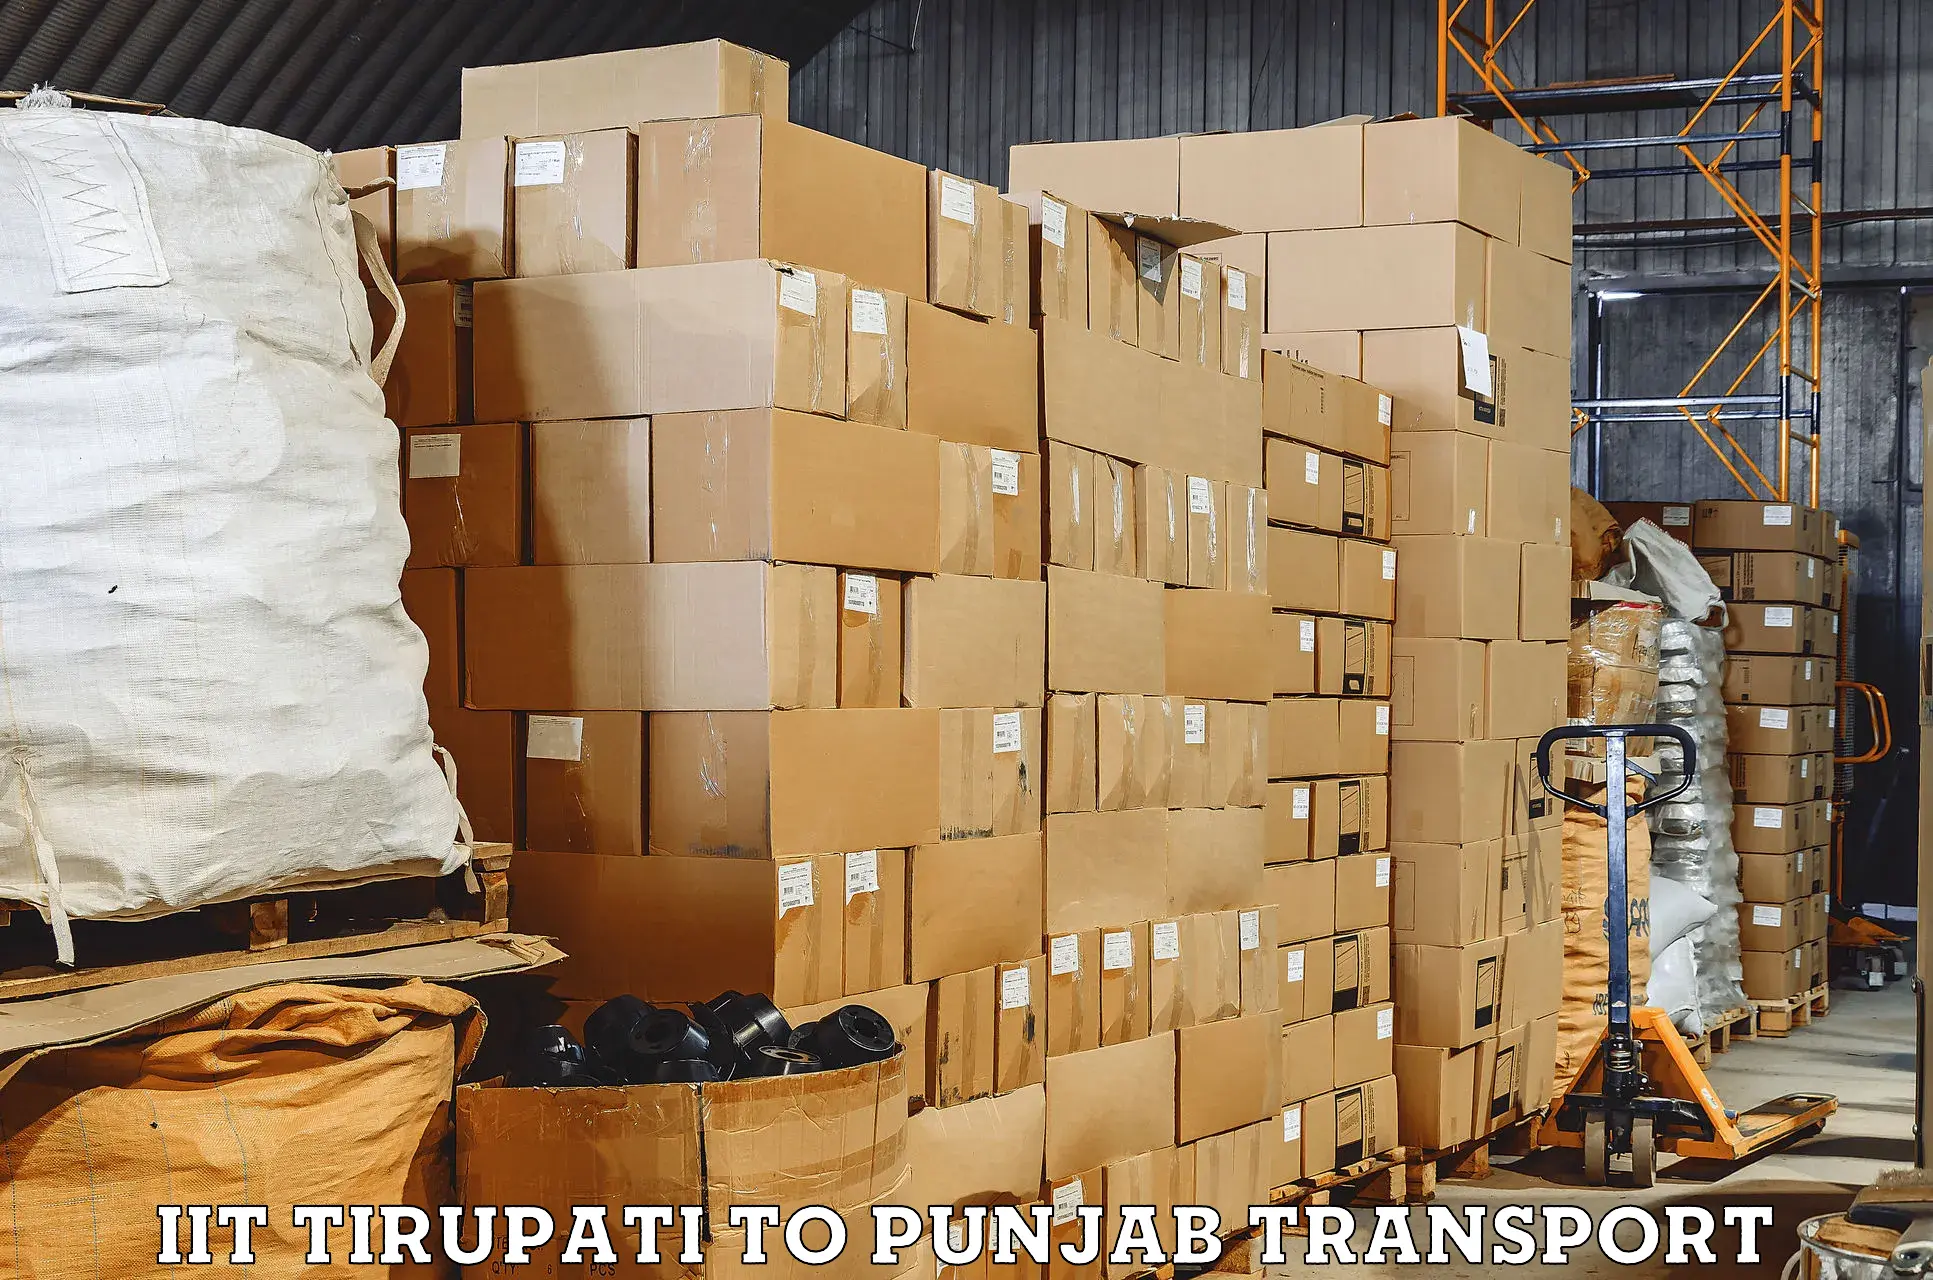 Sending bike to another city IIT Tirupati to Punjab